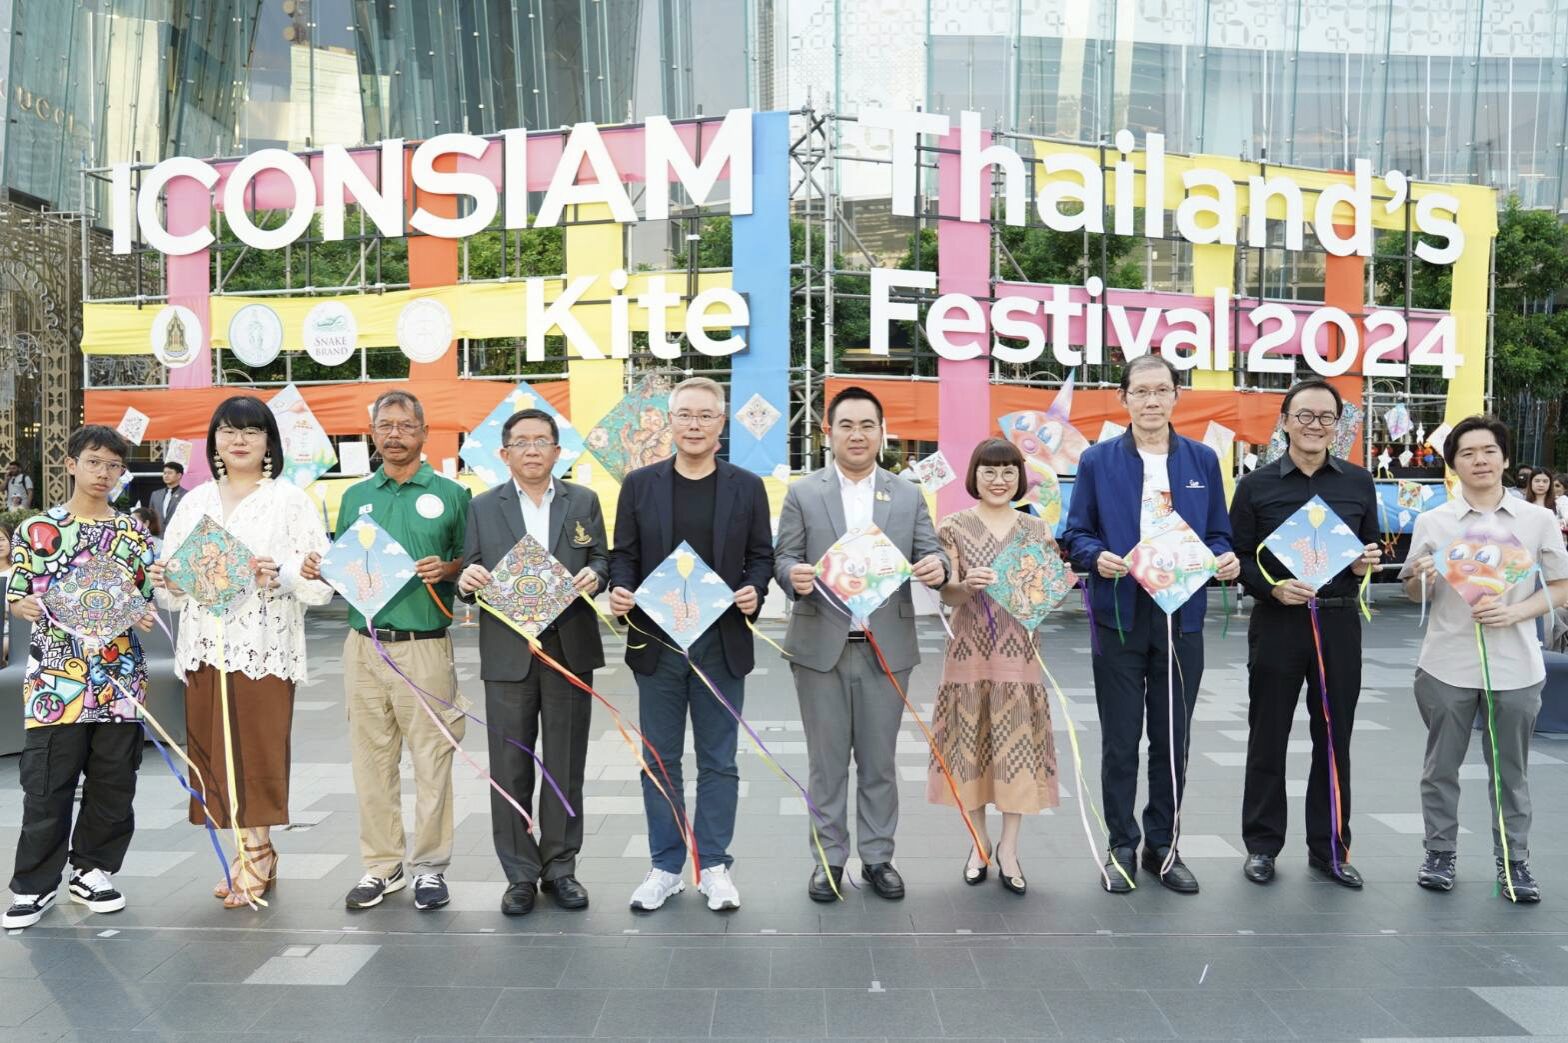 ไอคอนสยาม ICONSIAM Thailand’s Kite Festival 2024